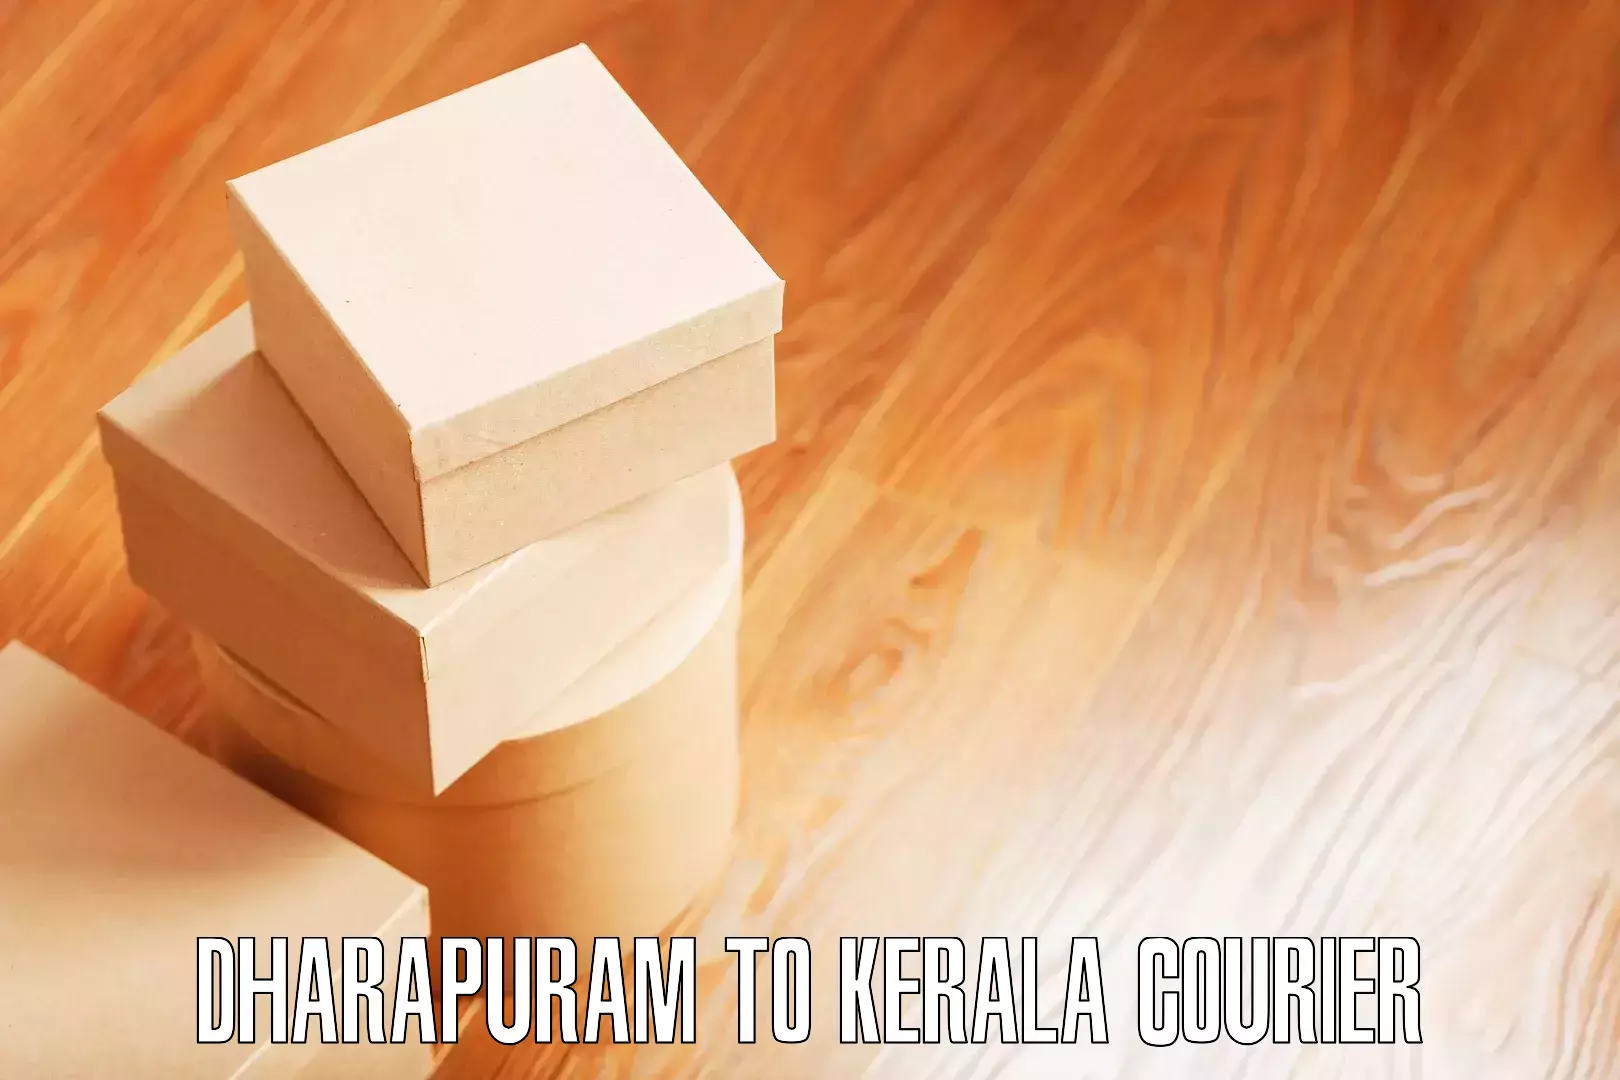 Online household goods transport Dharapuram to Kerala